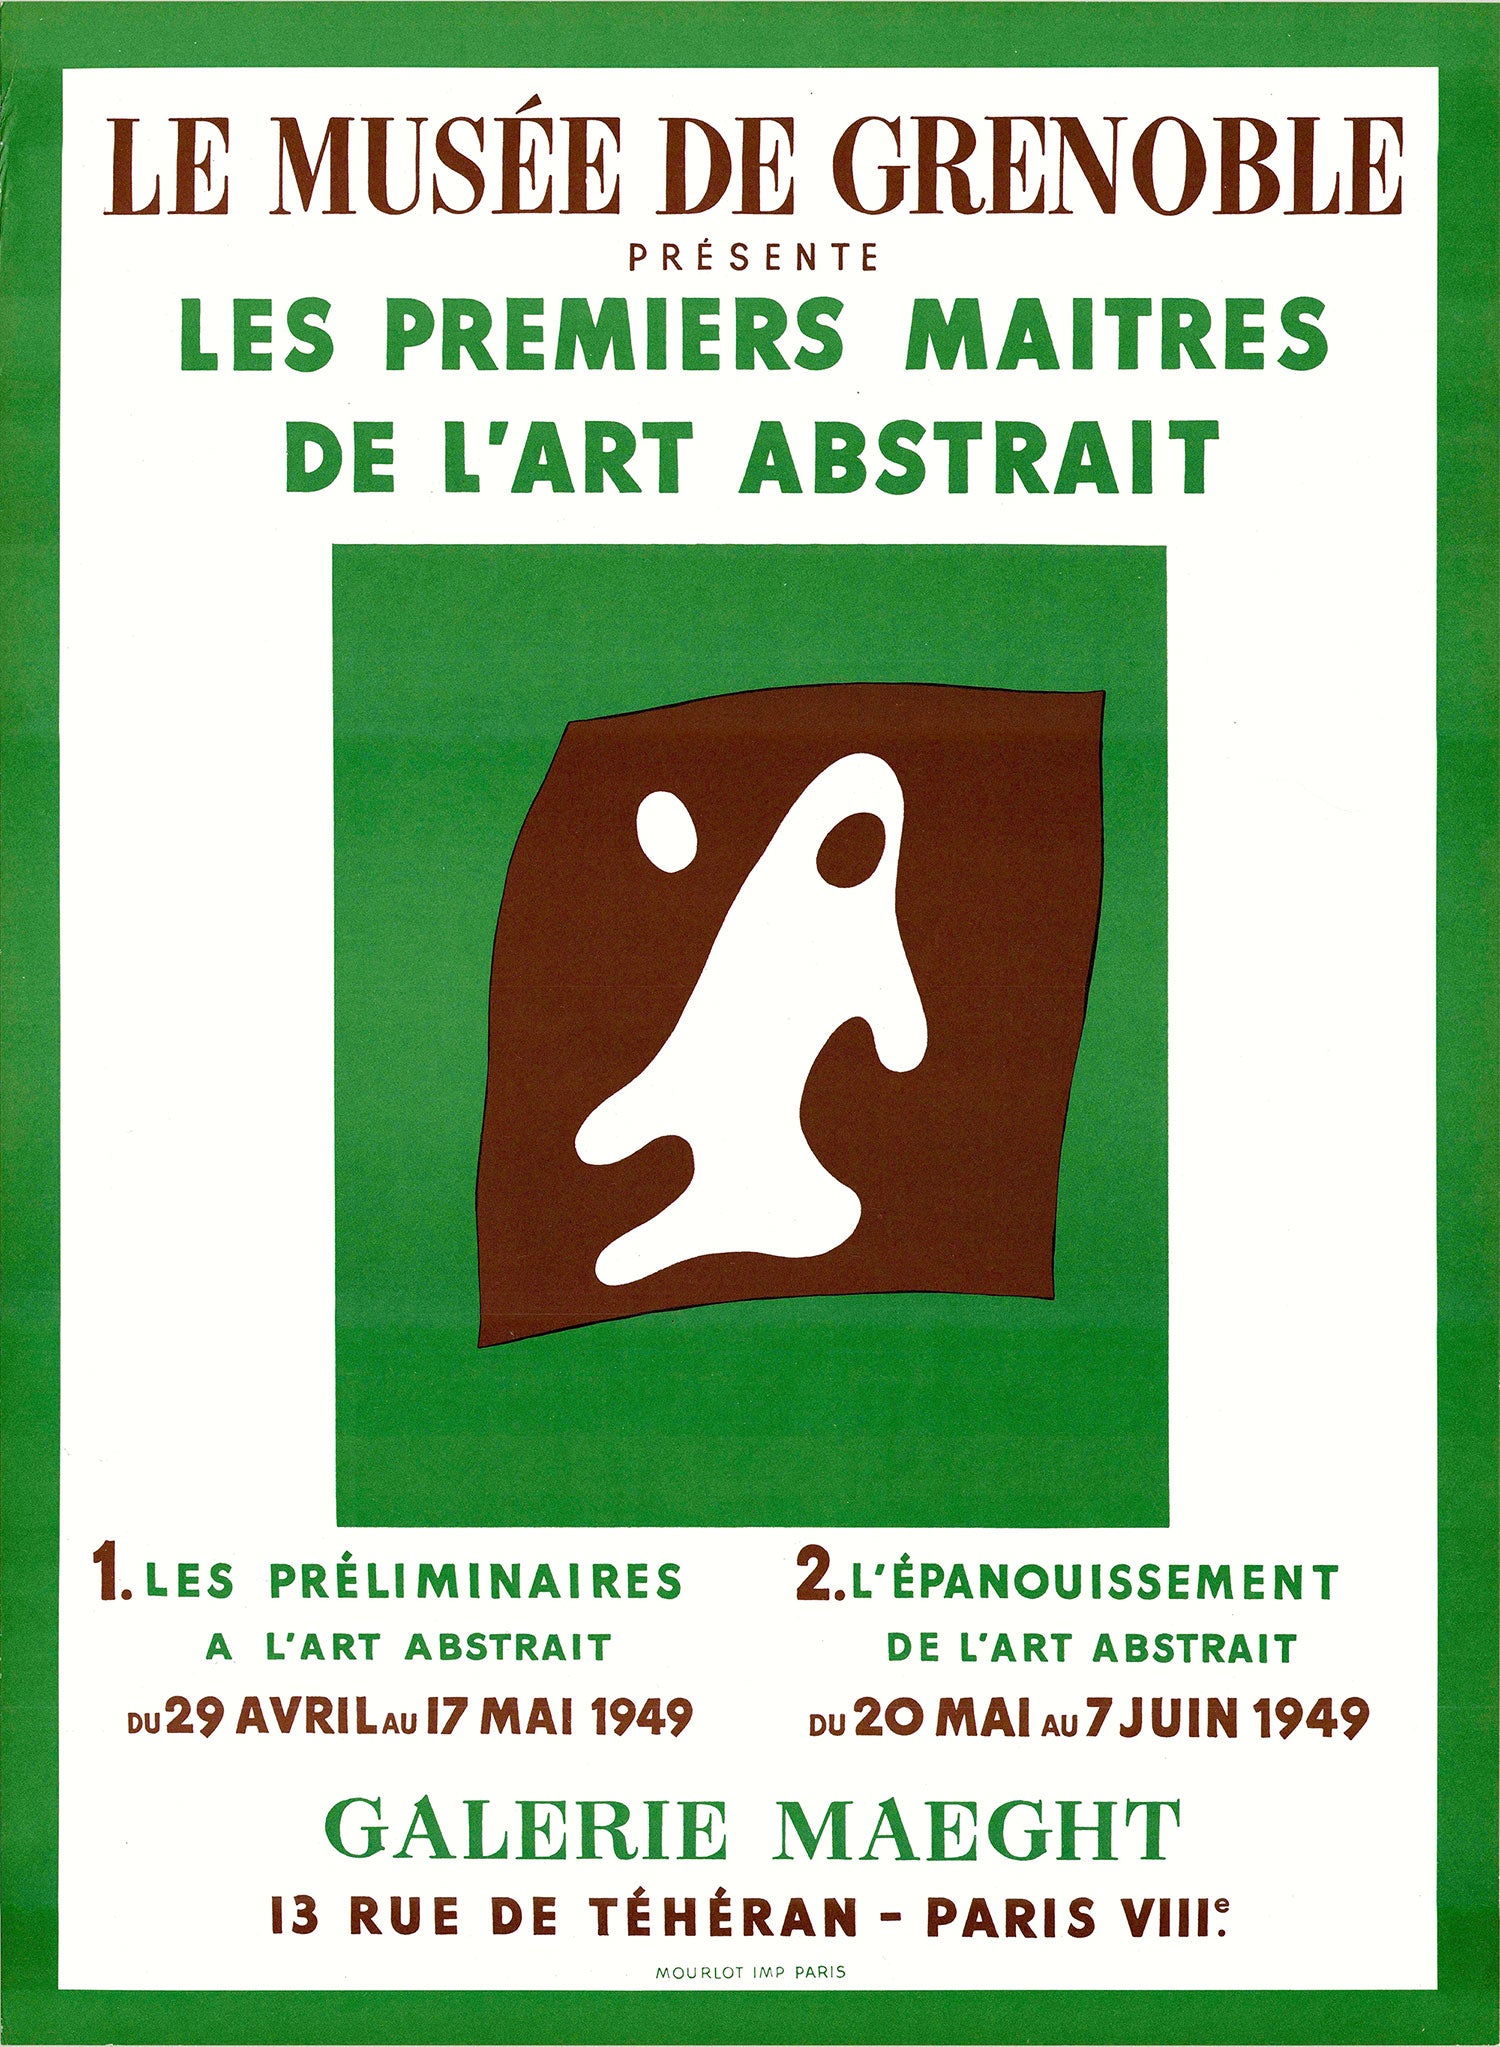 Les Premiers Maitres De L’Art Abstrait – Galerie Maeght, Paris 1949